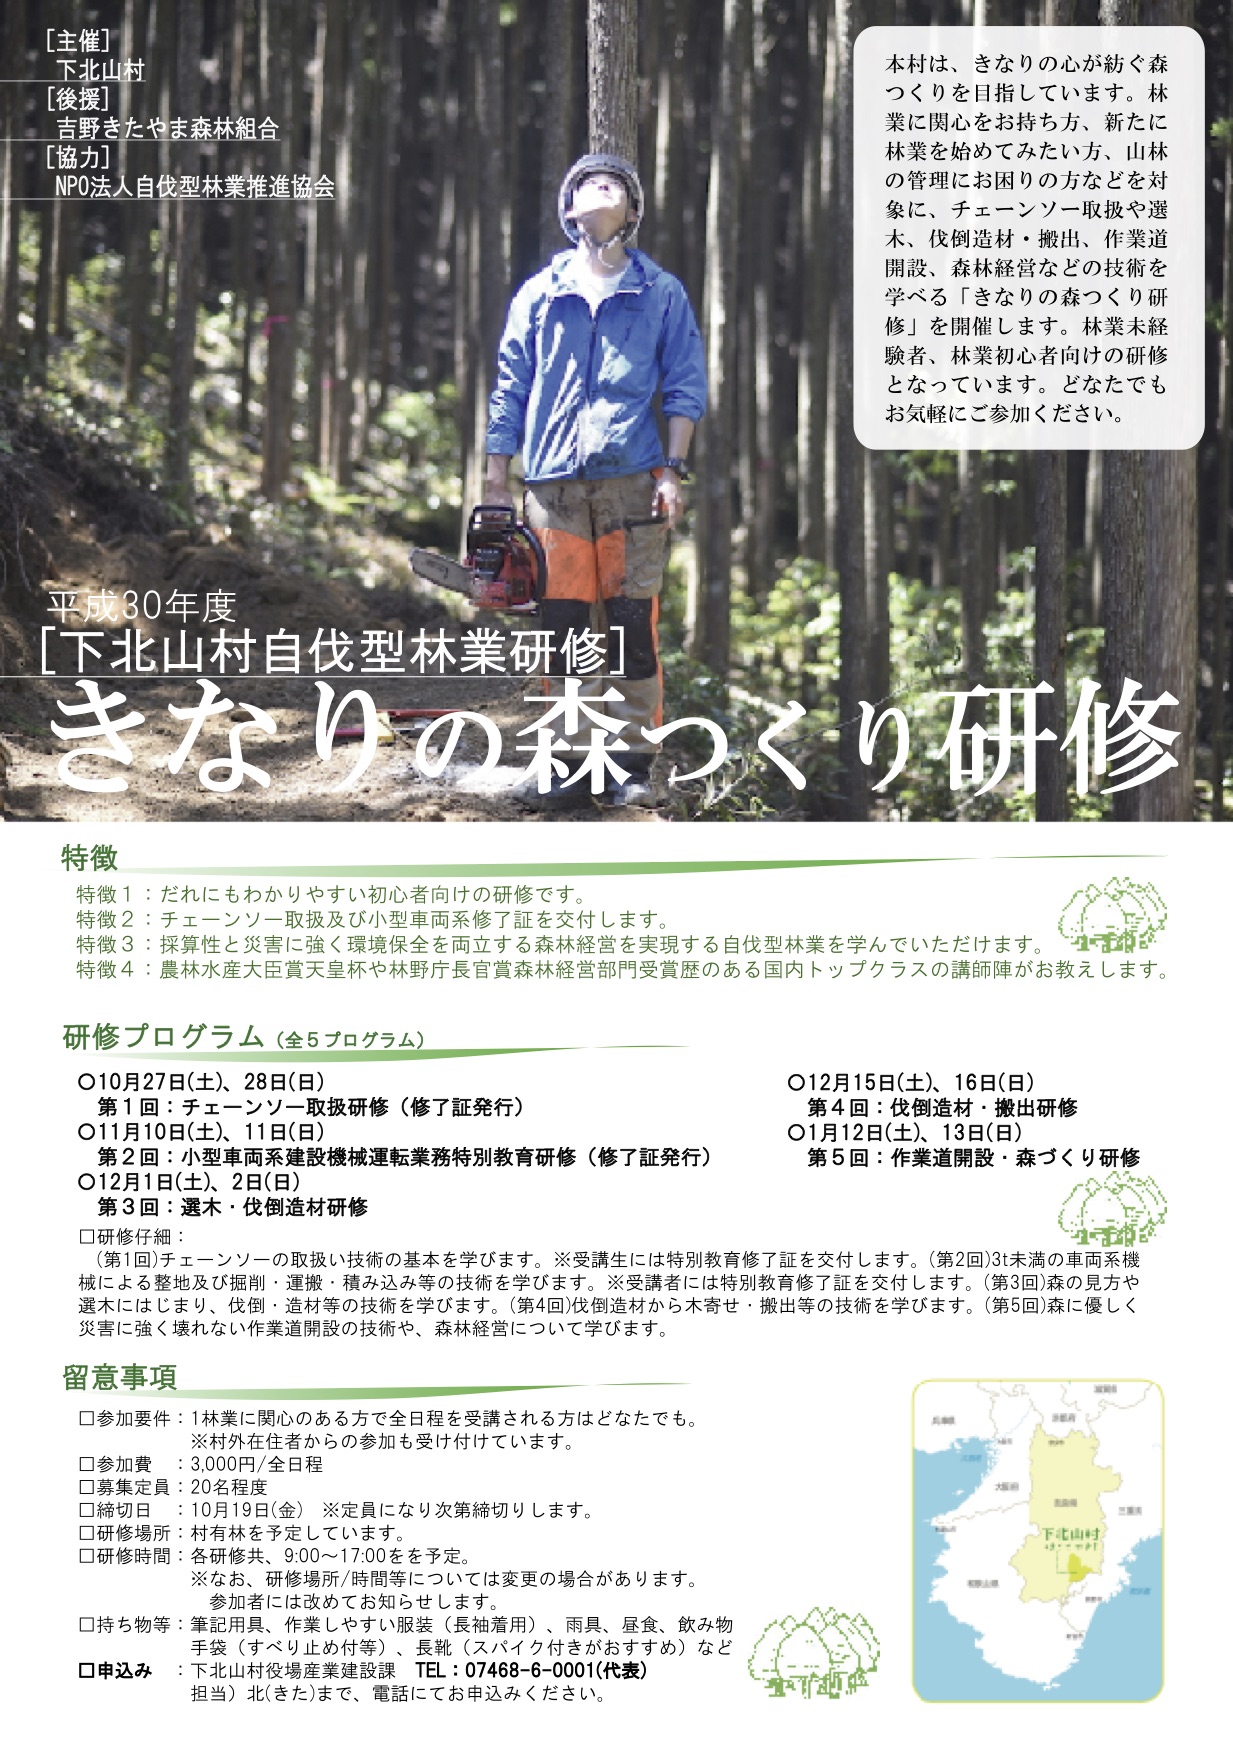 奈良県下北山村にて自伐型林業研修がおこなわれます